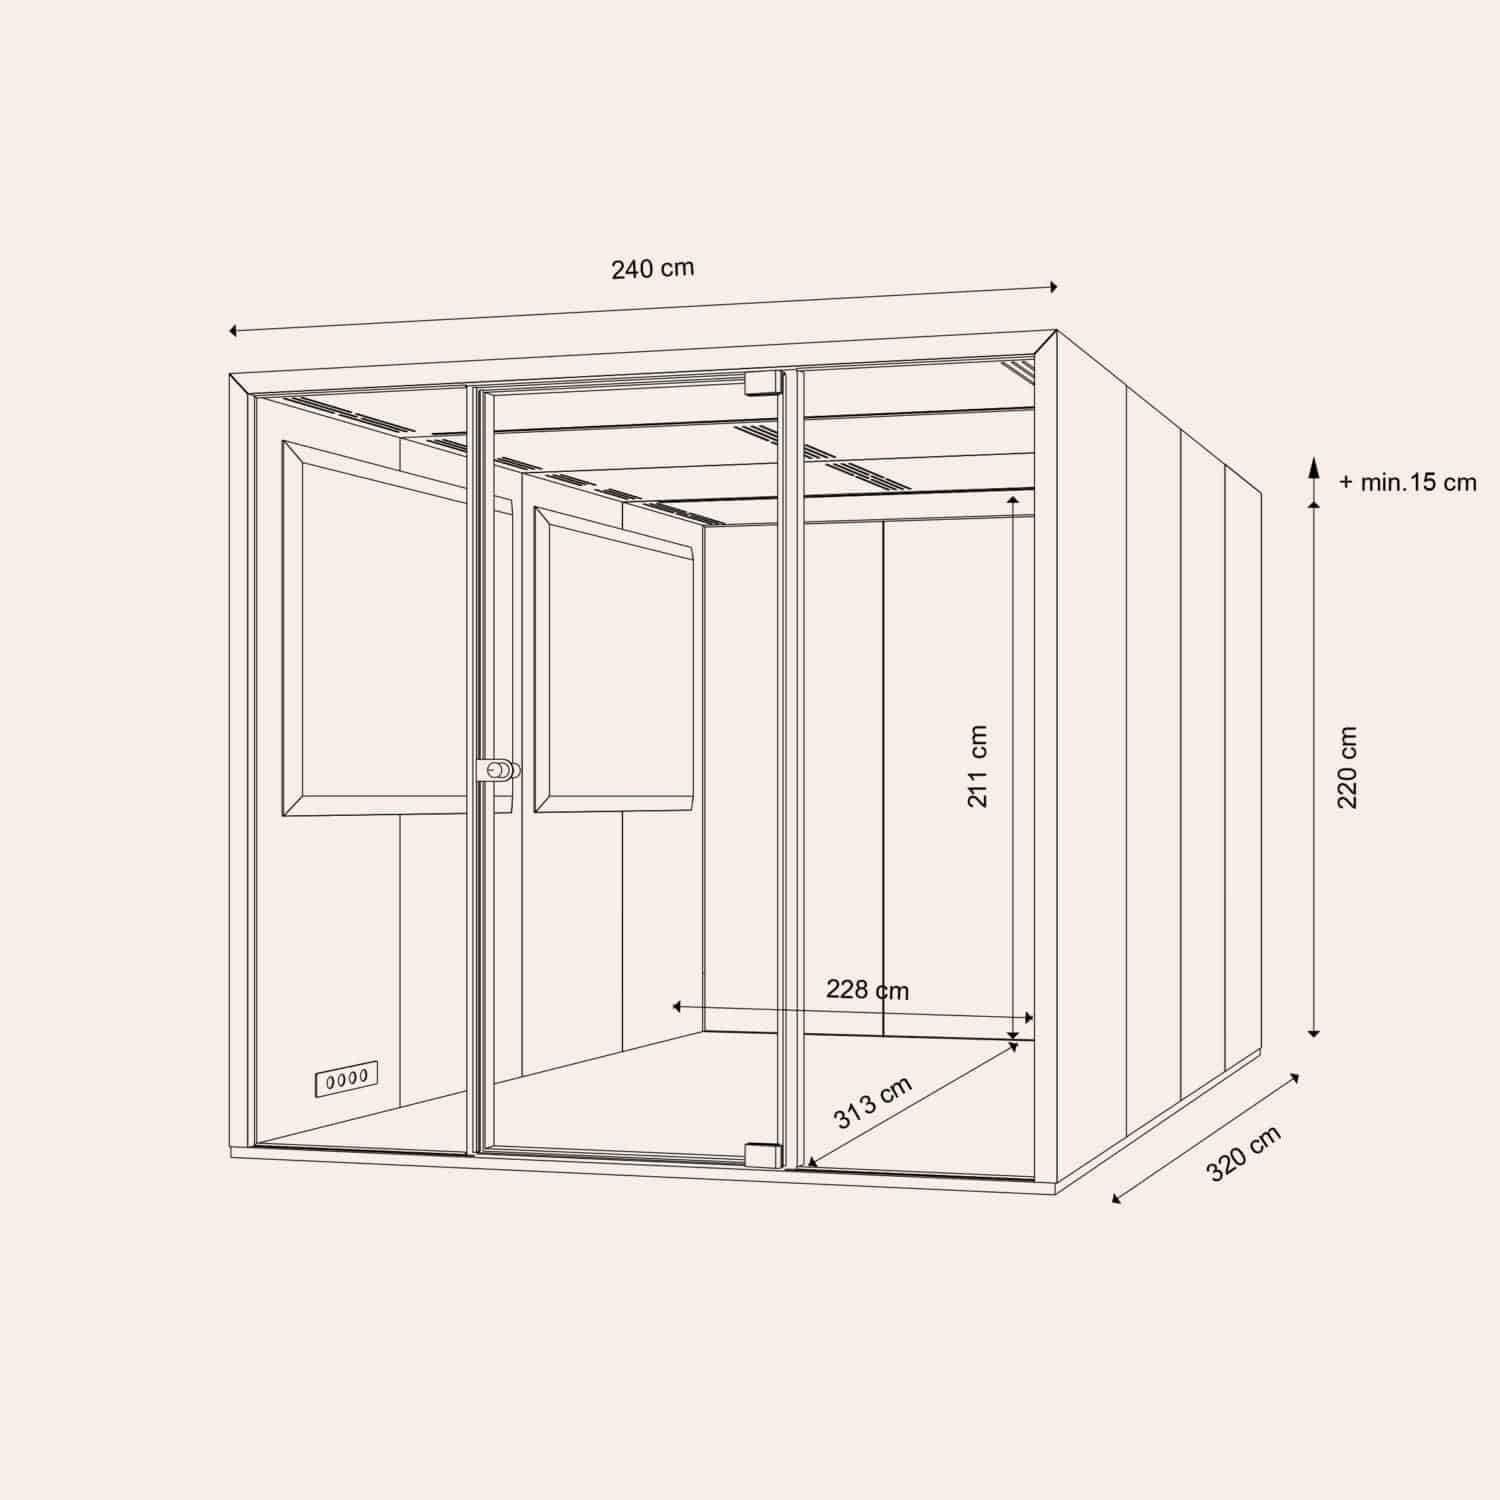 Taiga-Concept-Lohko-Box-7-measurement